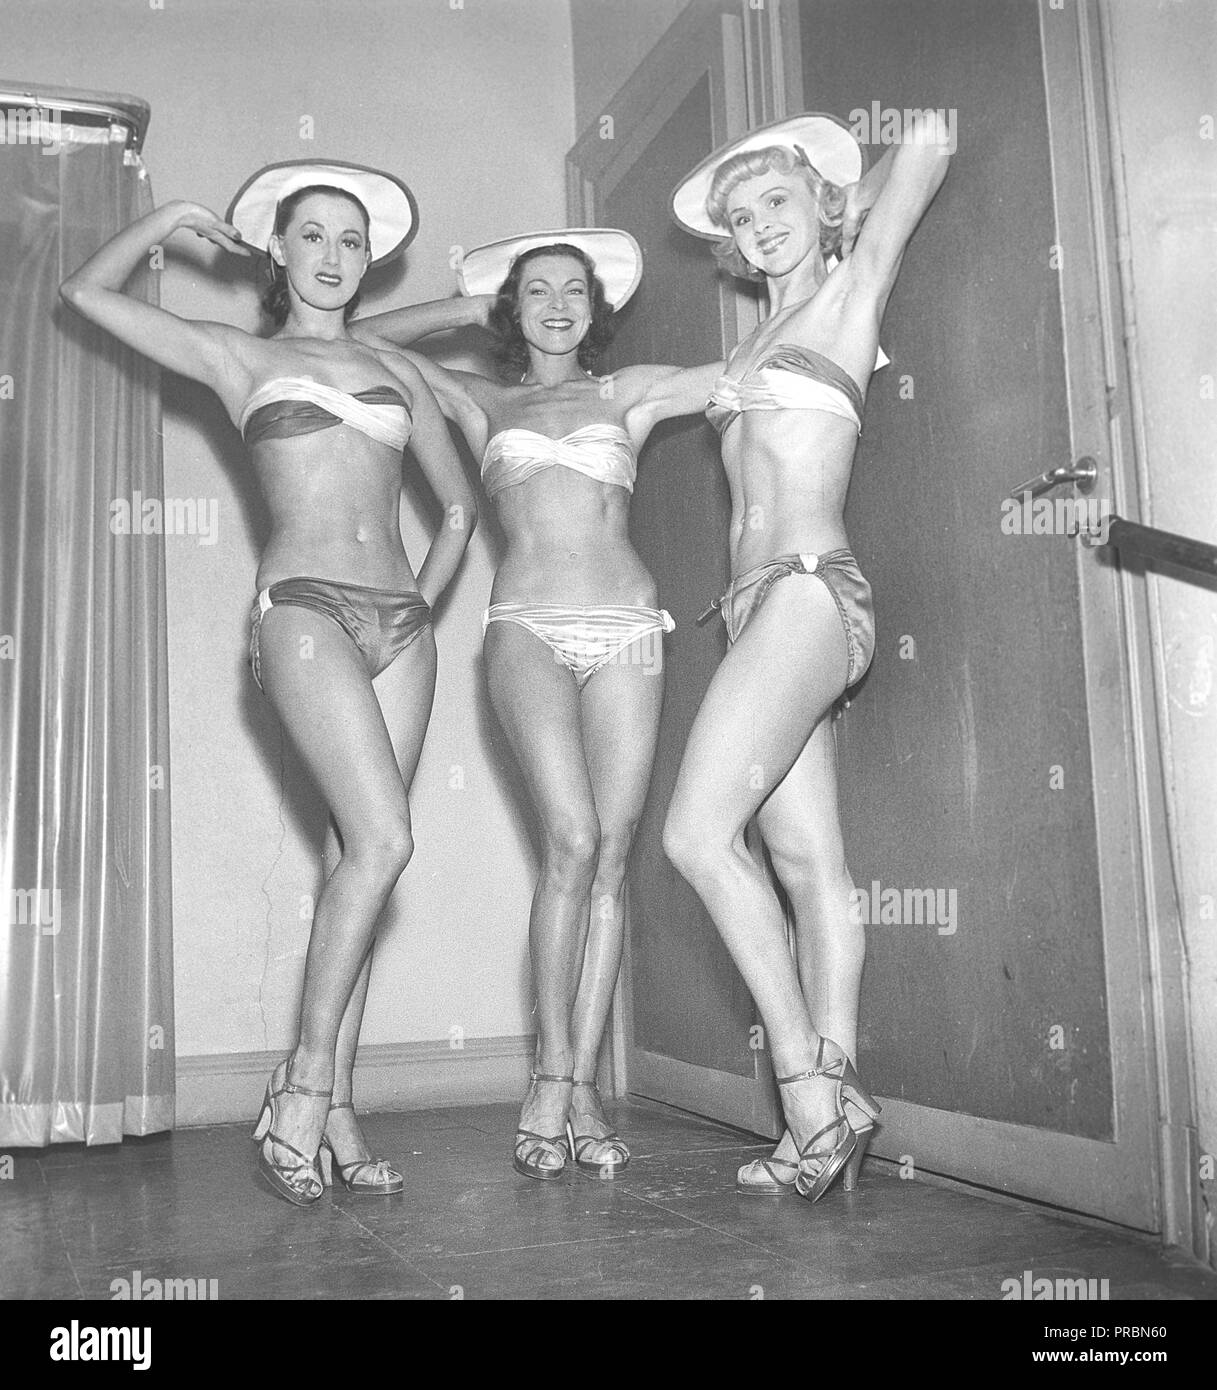 Les femmes des 1950s. Trois jeunes femmes portant le bikini, pose pour le  photographe. Suède 1951. Photo Kristoffersson réf. BE77-7 Photo Stock -  Alamy